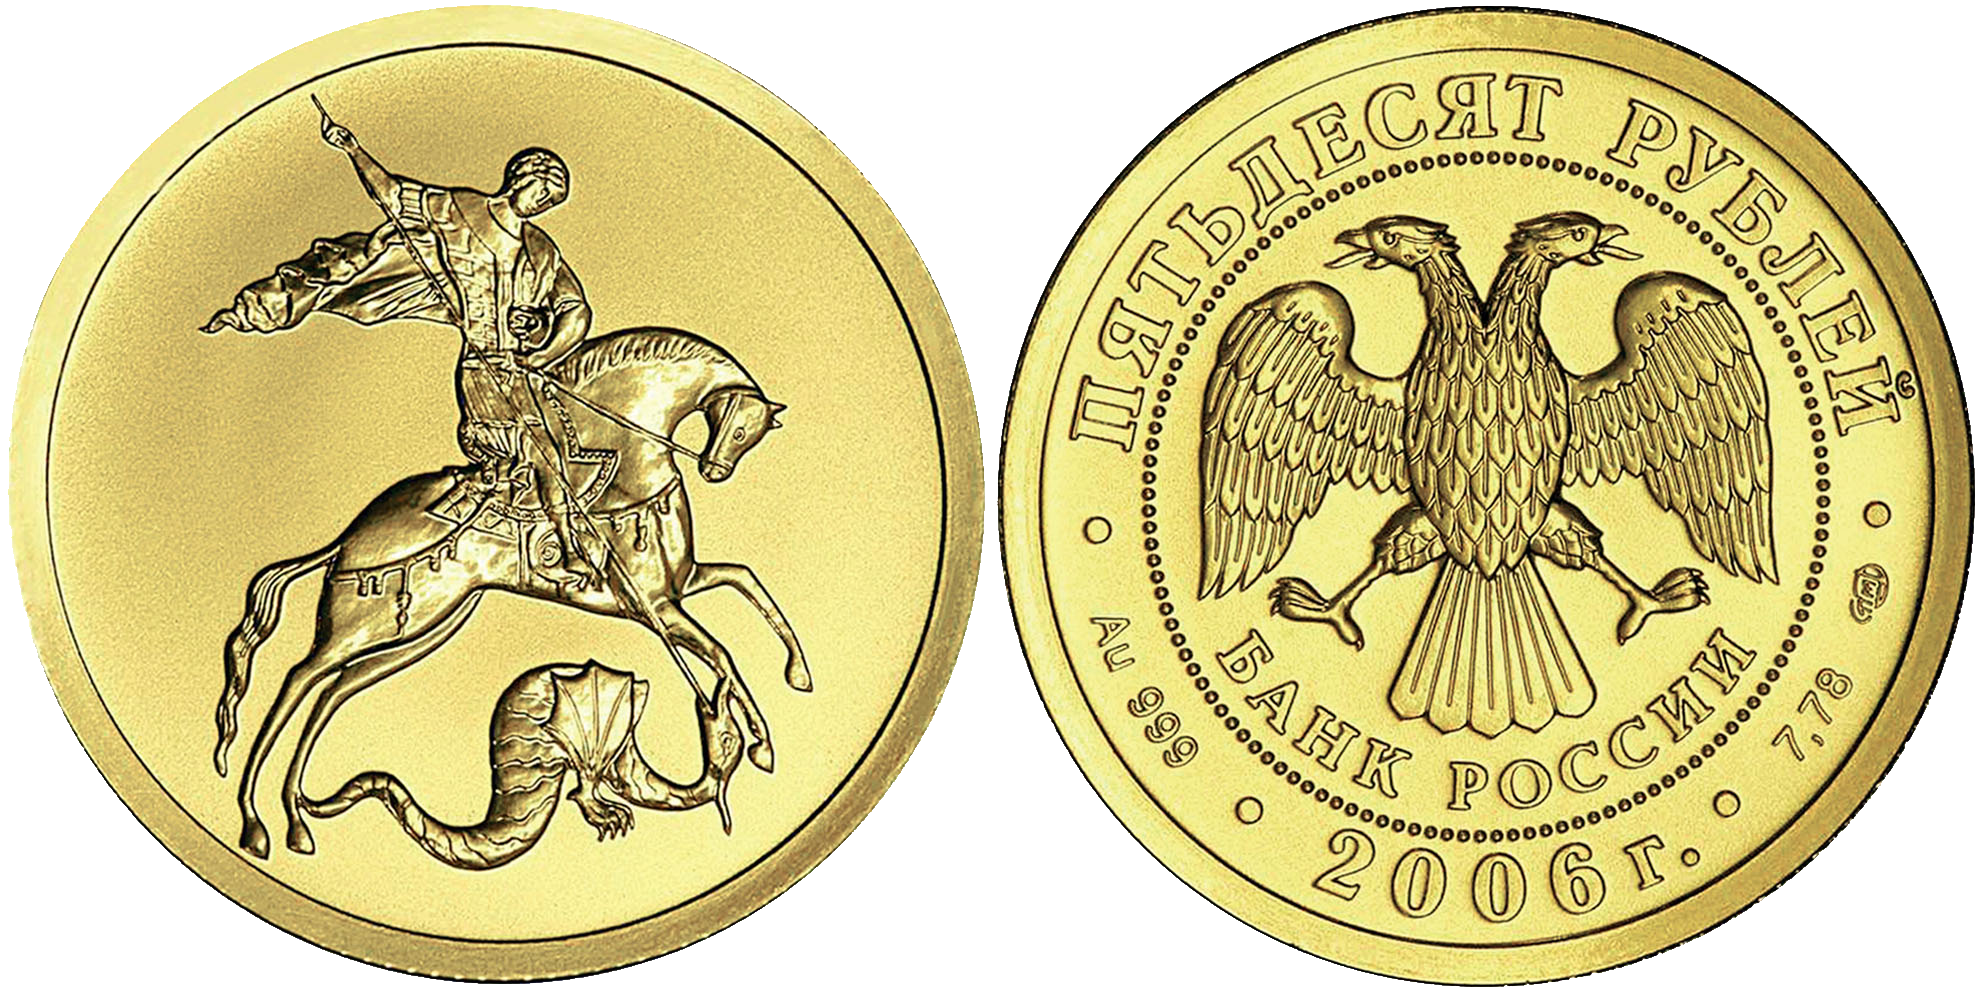 купить золотую монету Георгий Победоносец, скупка золотых монет.